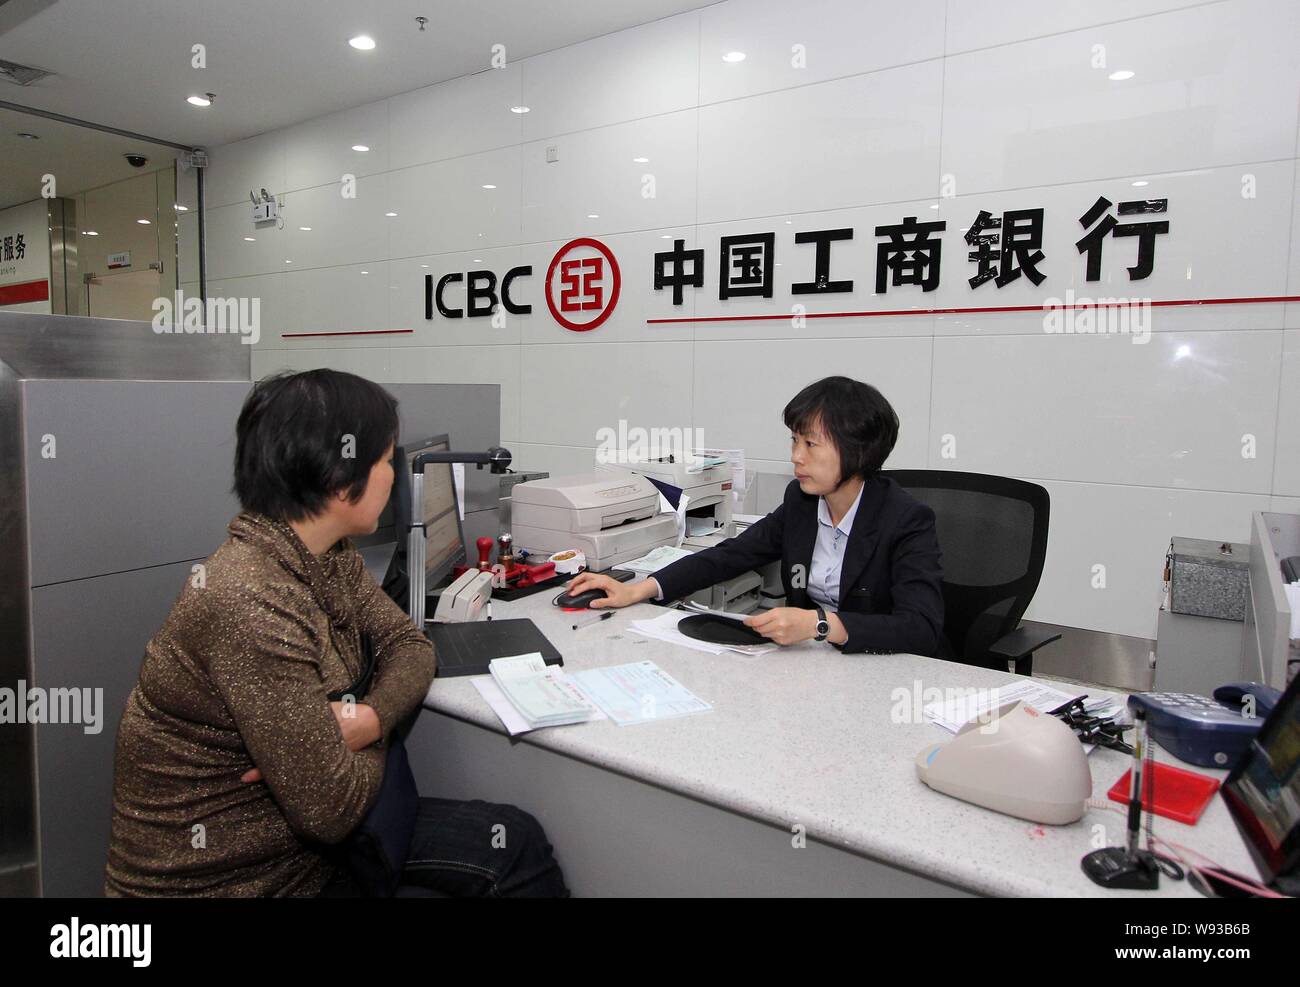 ---- Eine chinesische Angestellte dient ein Kunde an einem Zweig der ICBC (Industrielle und kommerzielle Bank von China) in Jinjiang city, südost China Fujian prov Stockfoto